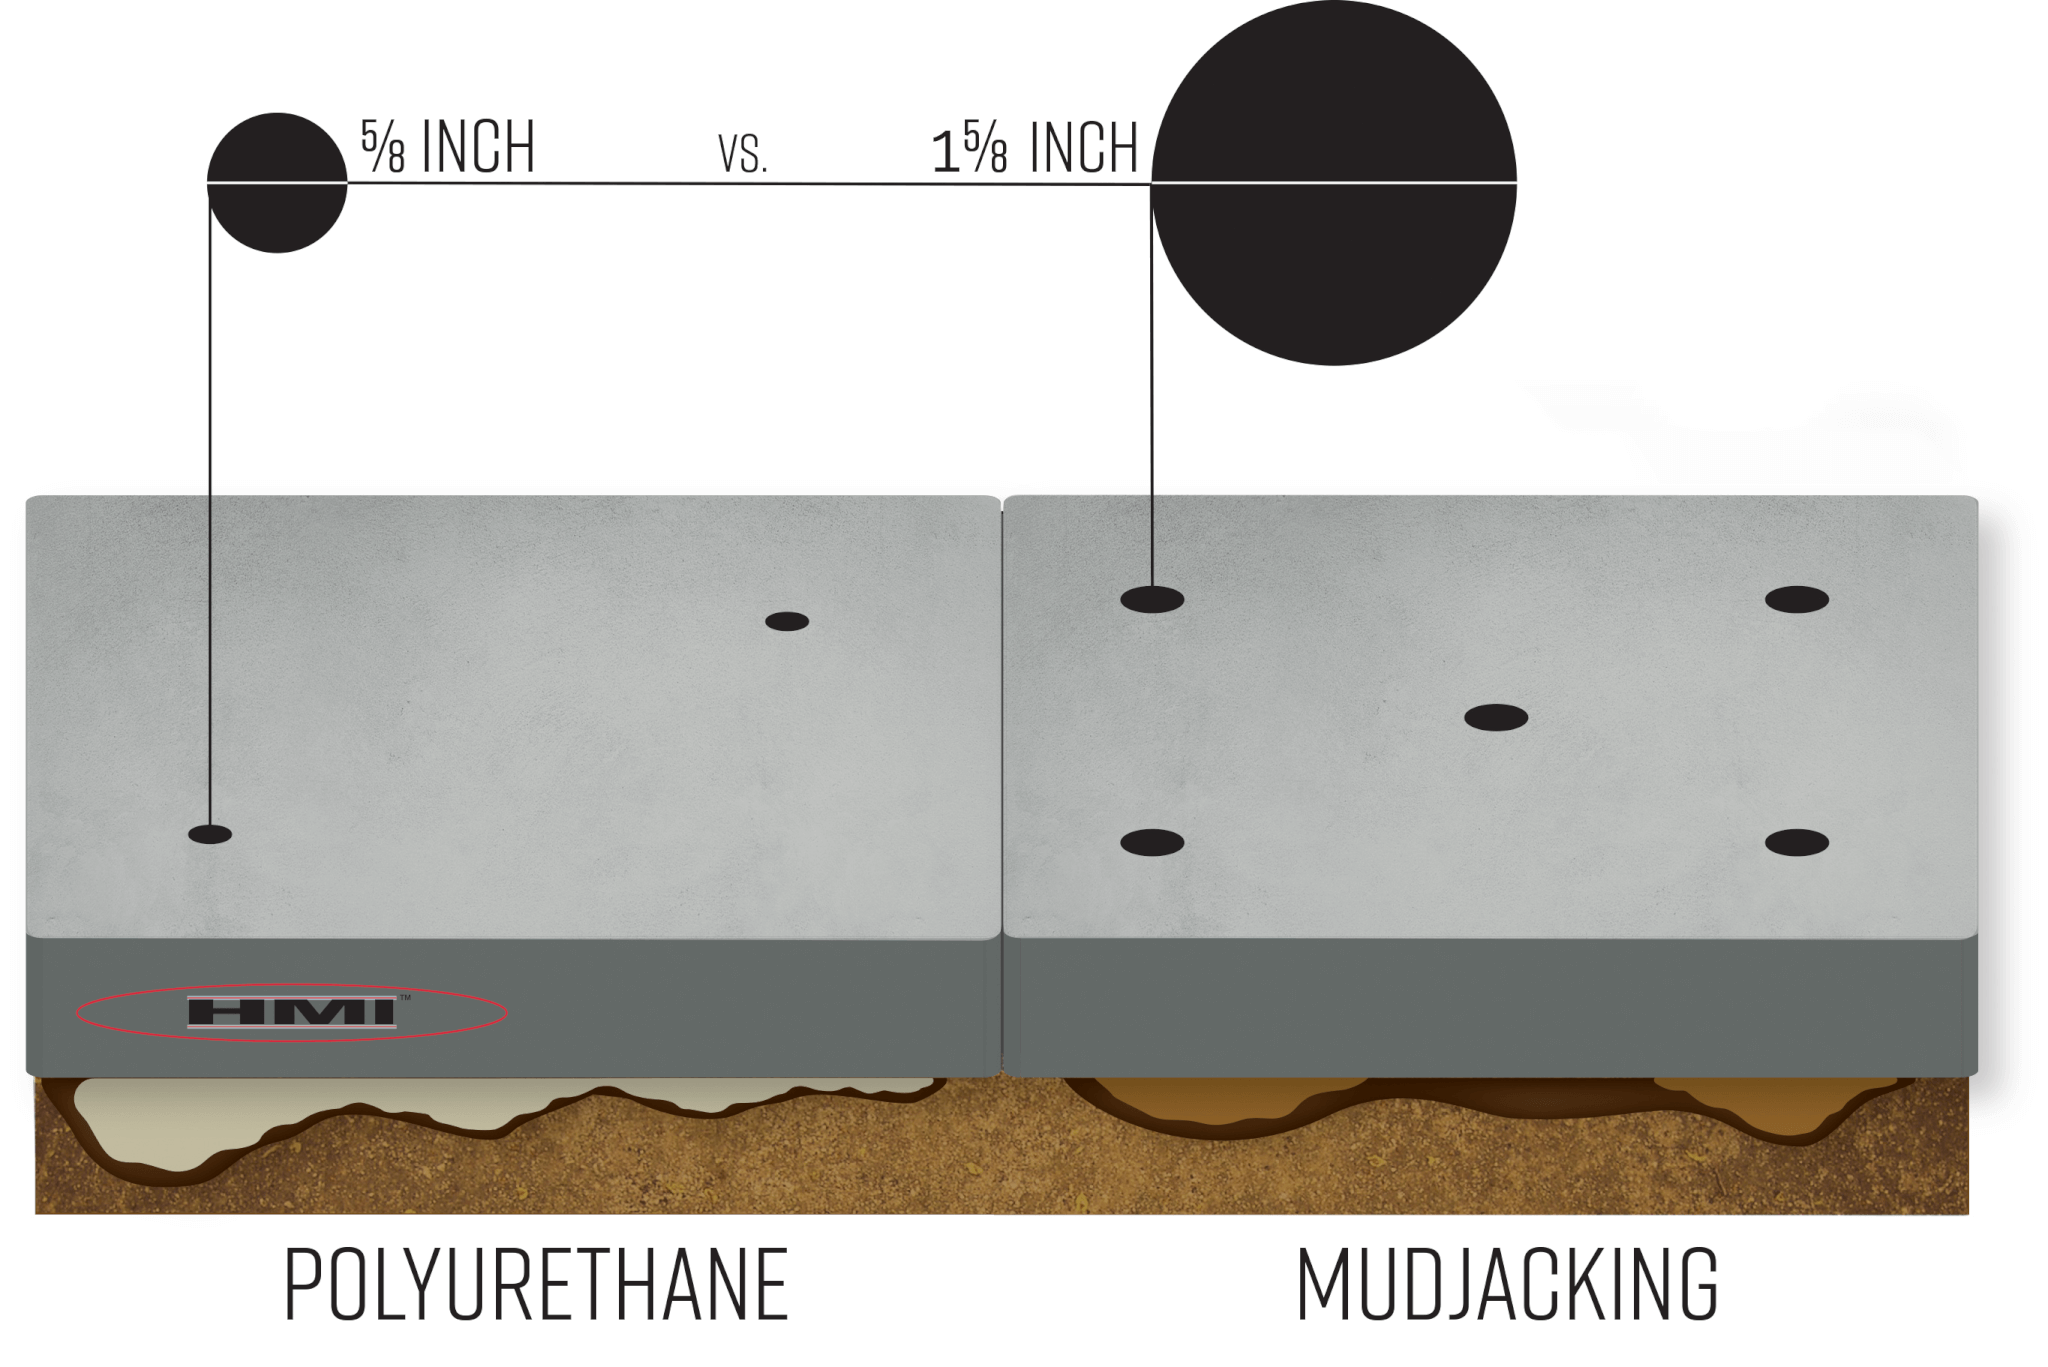 Small polyurethane injection holes versus large mudjacking holes